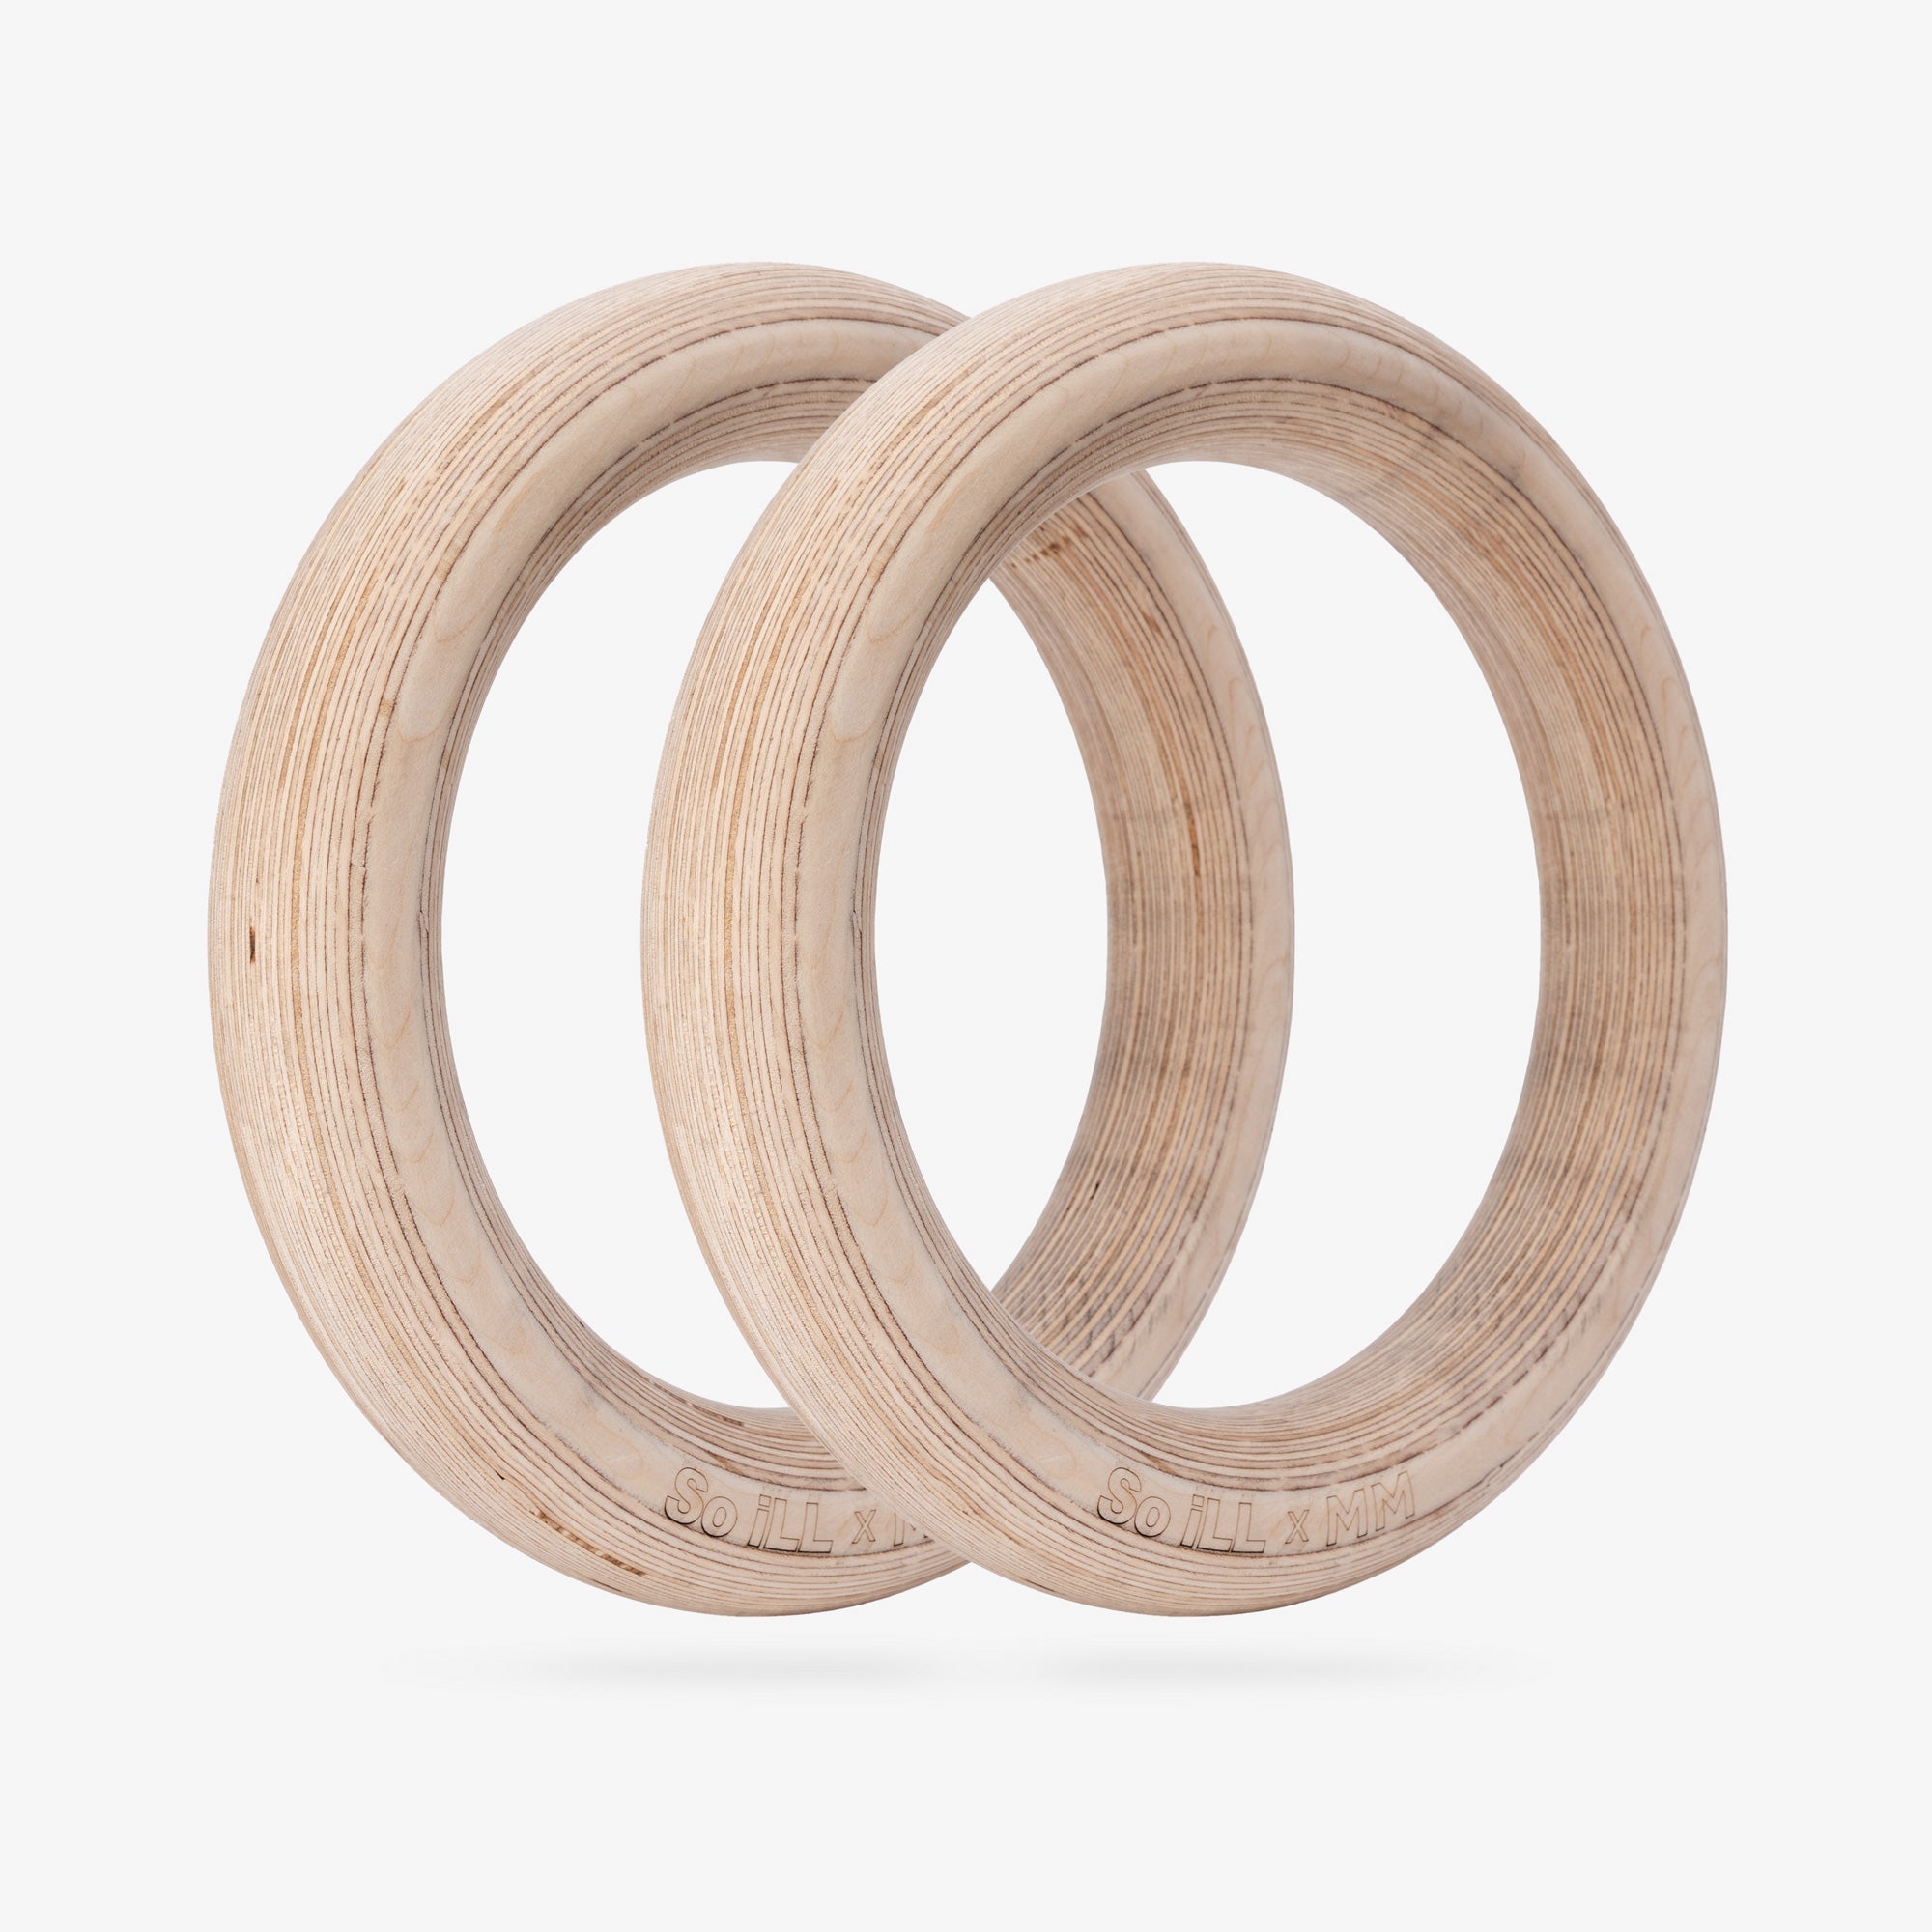 Mega Wooden Rings • So iLL x Meagan Martin x 360 Holds - - So iLL - So iLL